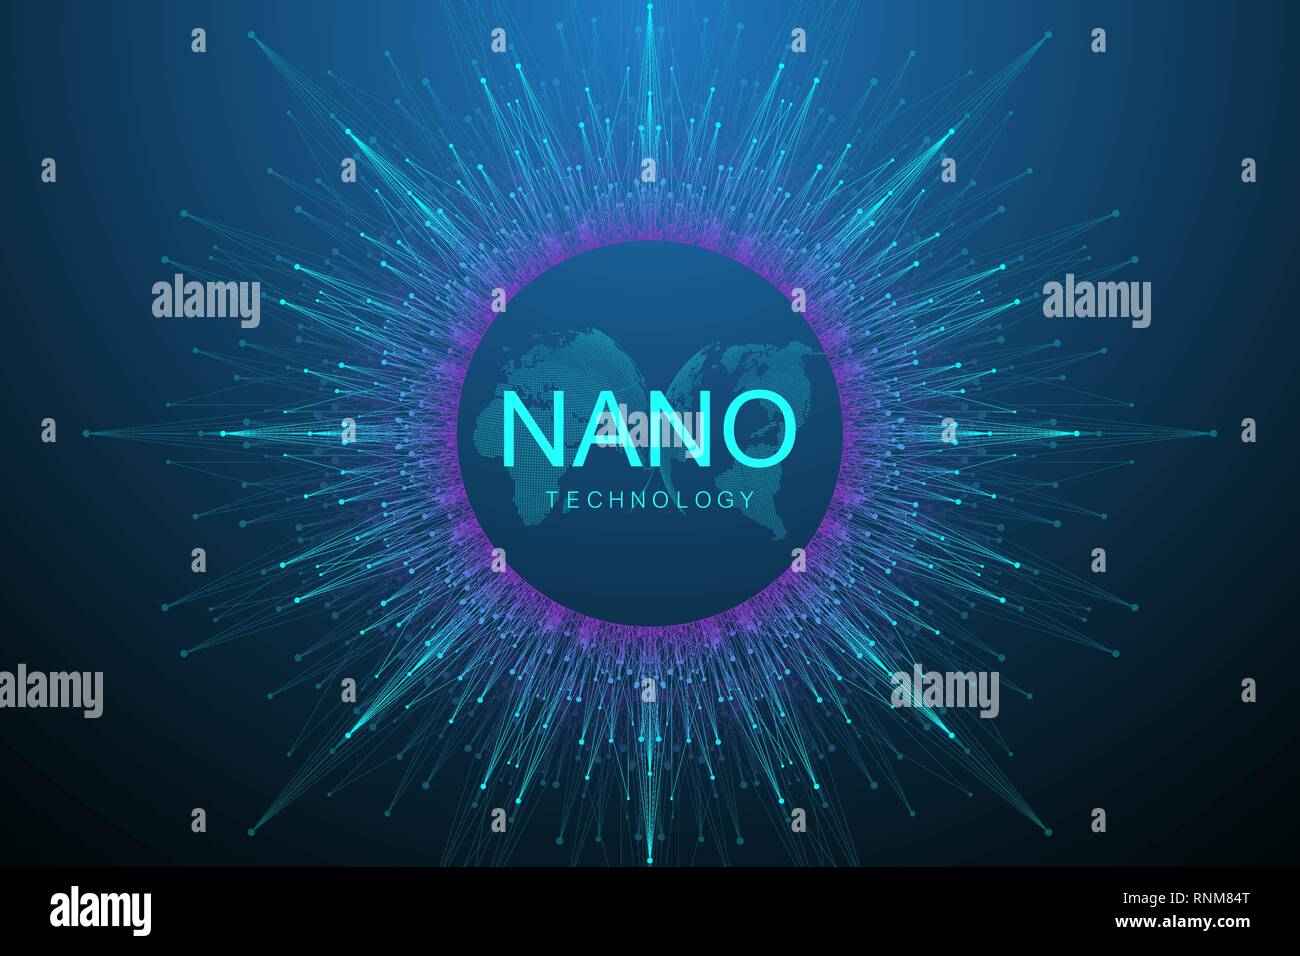 Nano technologies résumé fond. Cyber technologie concept. L'intelligence artificielle, la réalité virtuelle, de la bionique, robotique, réseau mondial Illustration de Vecteur